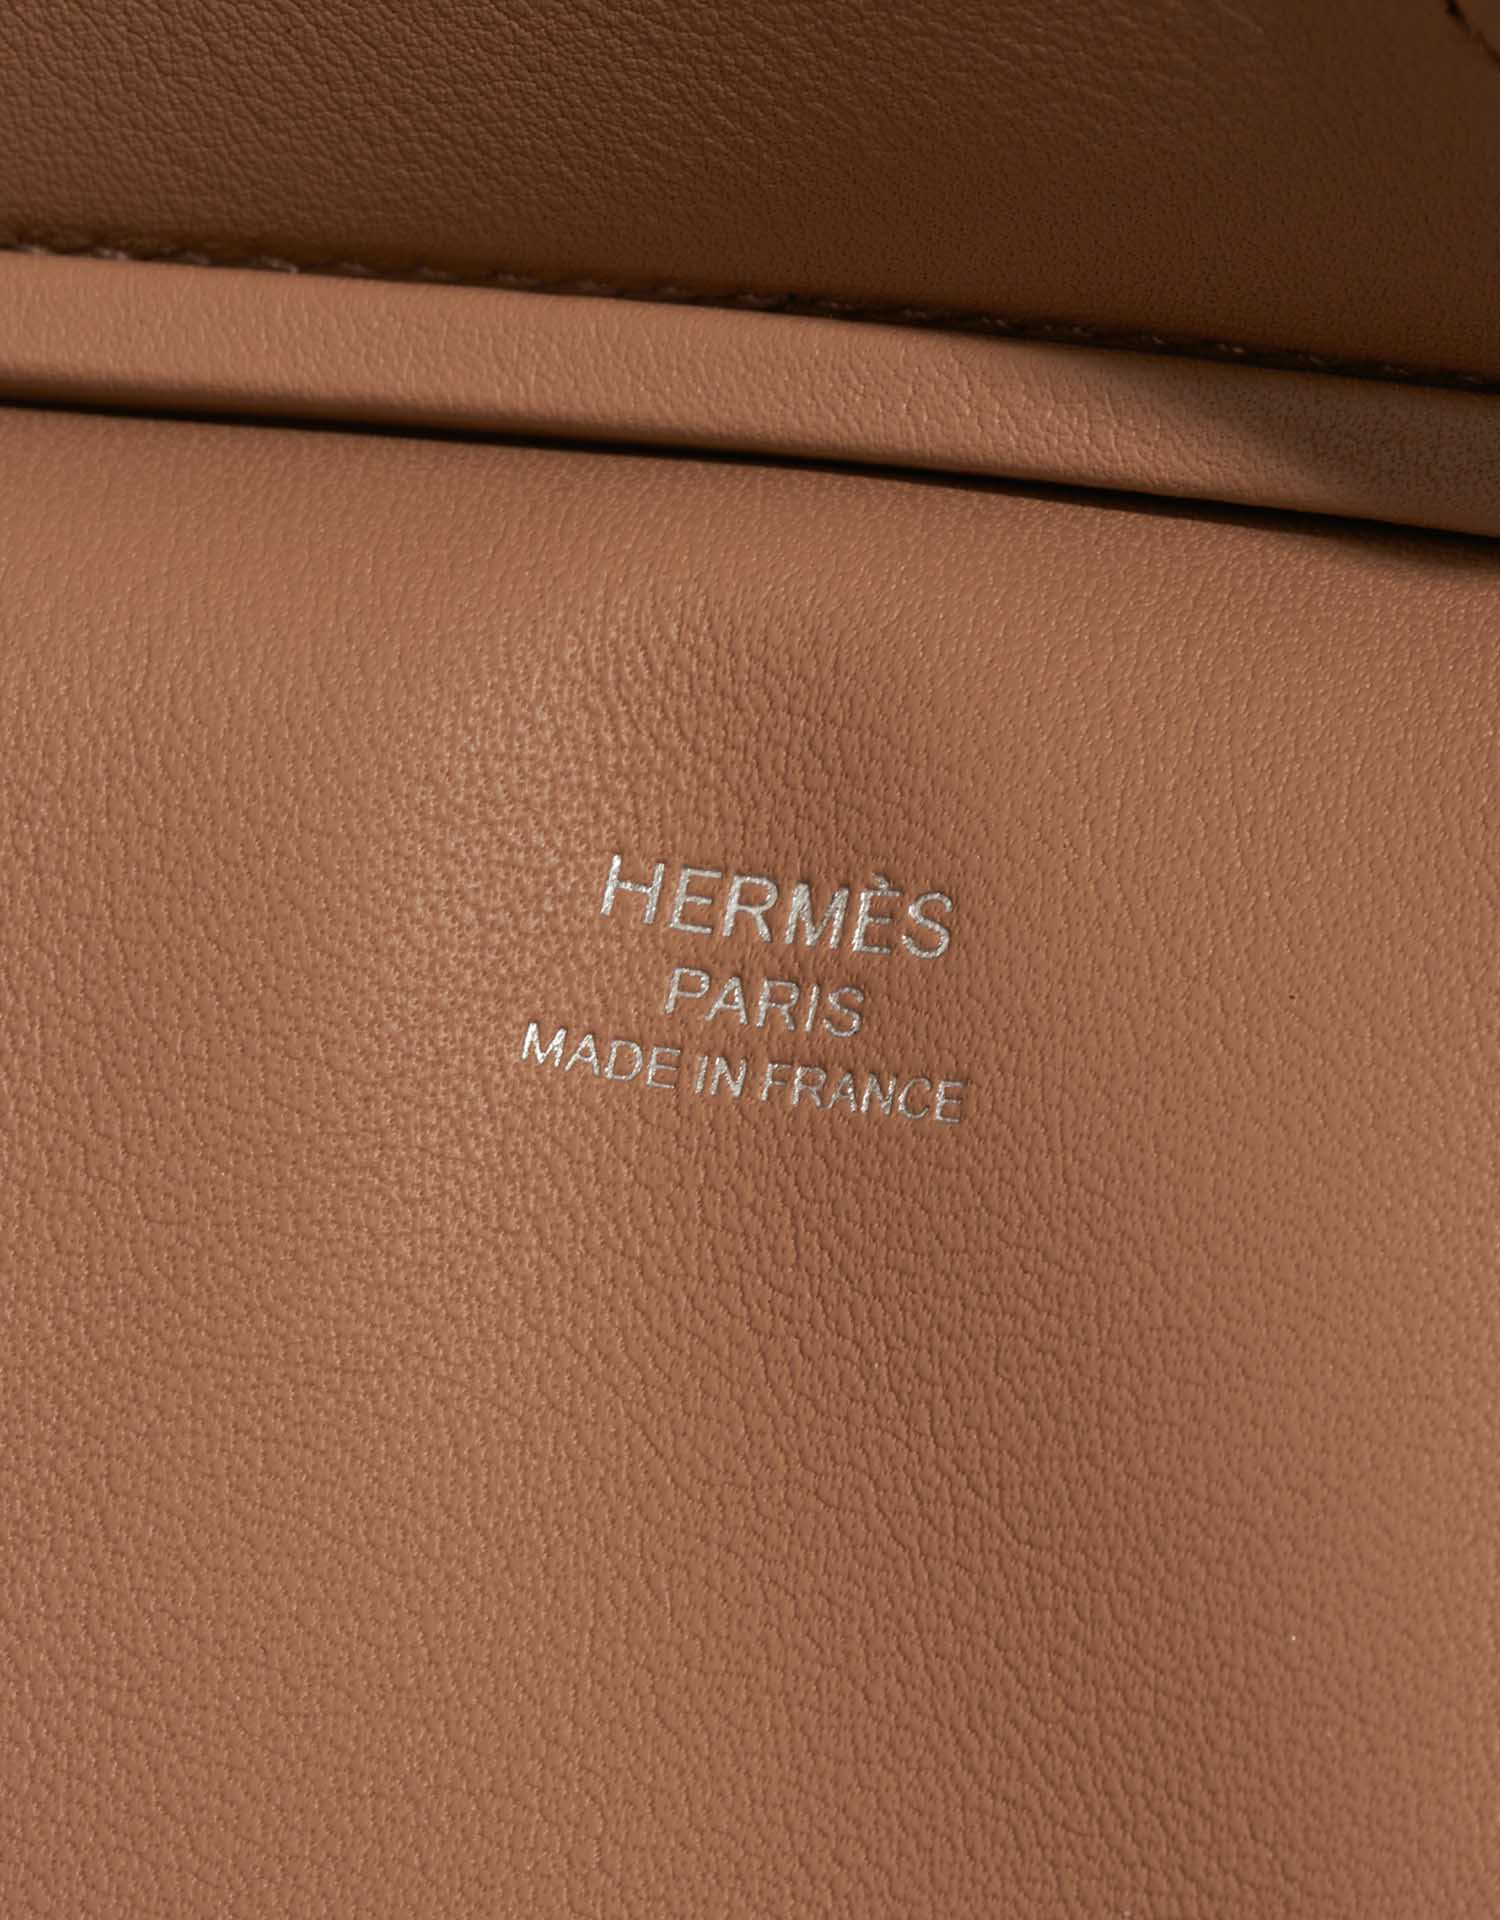 Hermès Birkin 25 JauneCitron-Chai Logo | Verkaufen Sie Ihre Designertasche auf Saclab.com